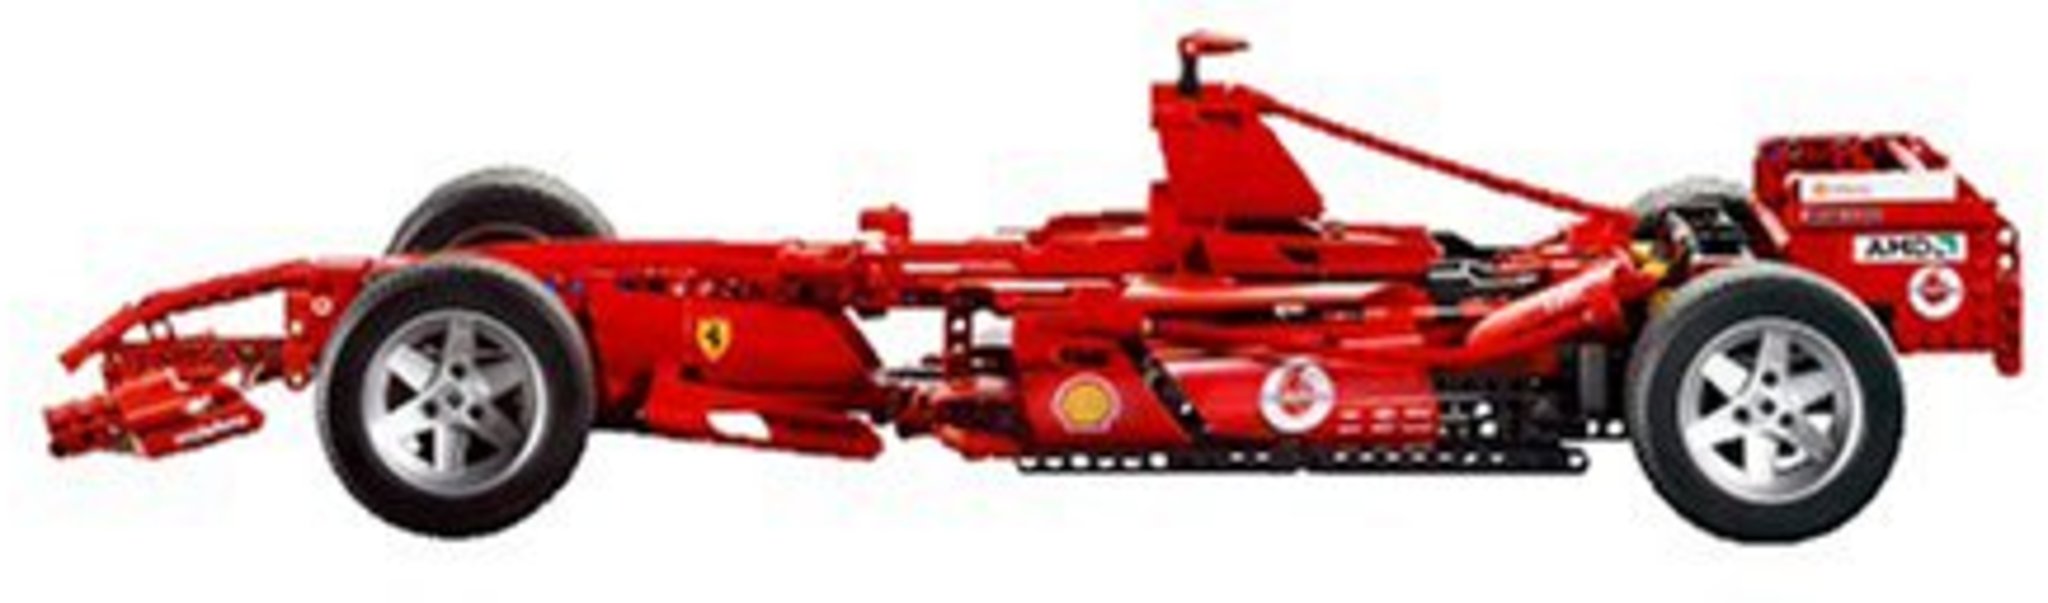 LEGO Racers 8674 - Ferrari F1 1:8 | Mattonito